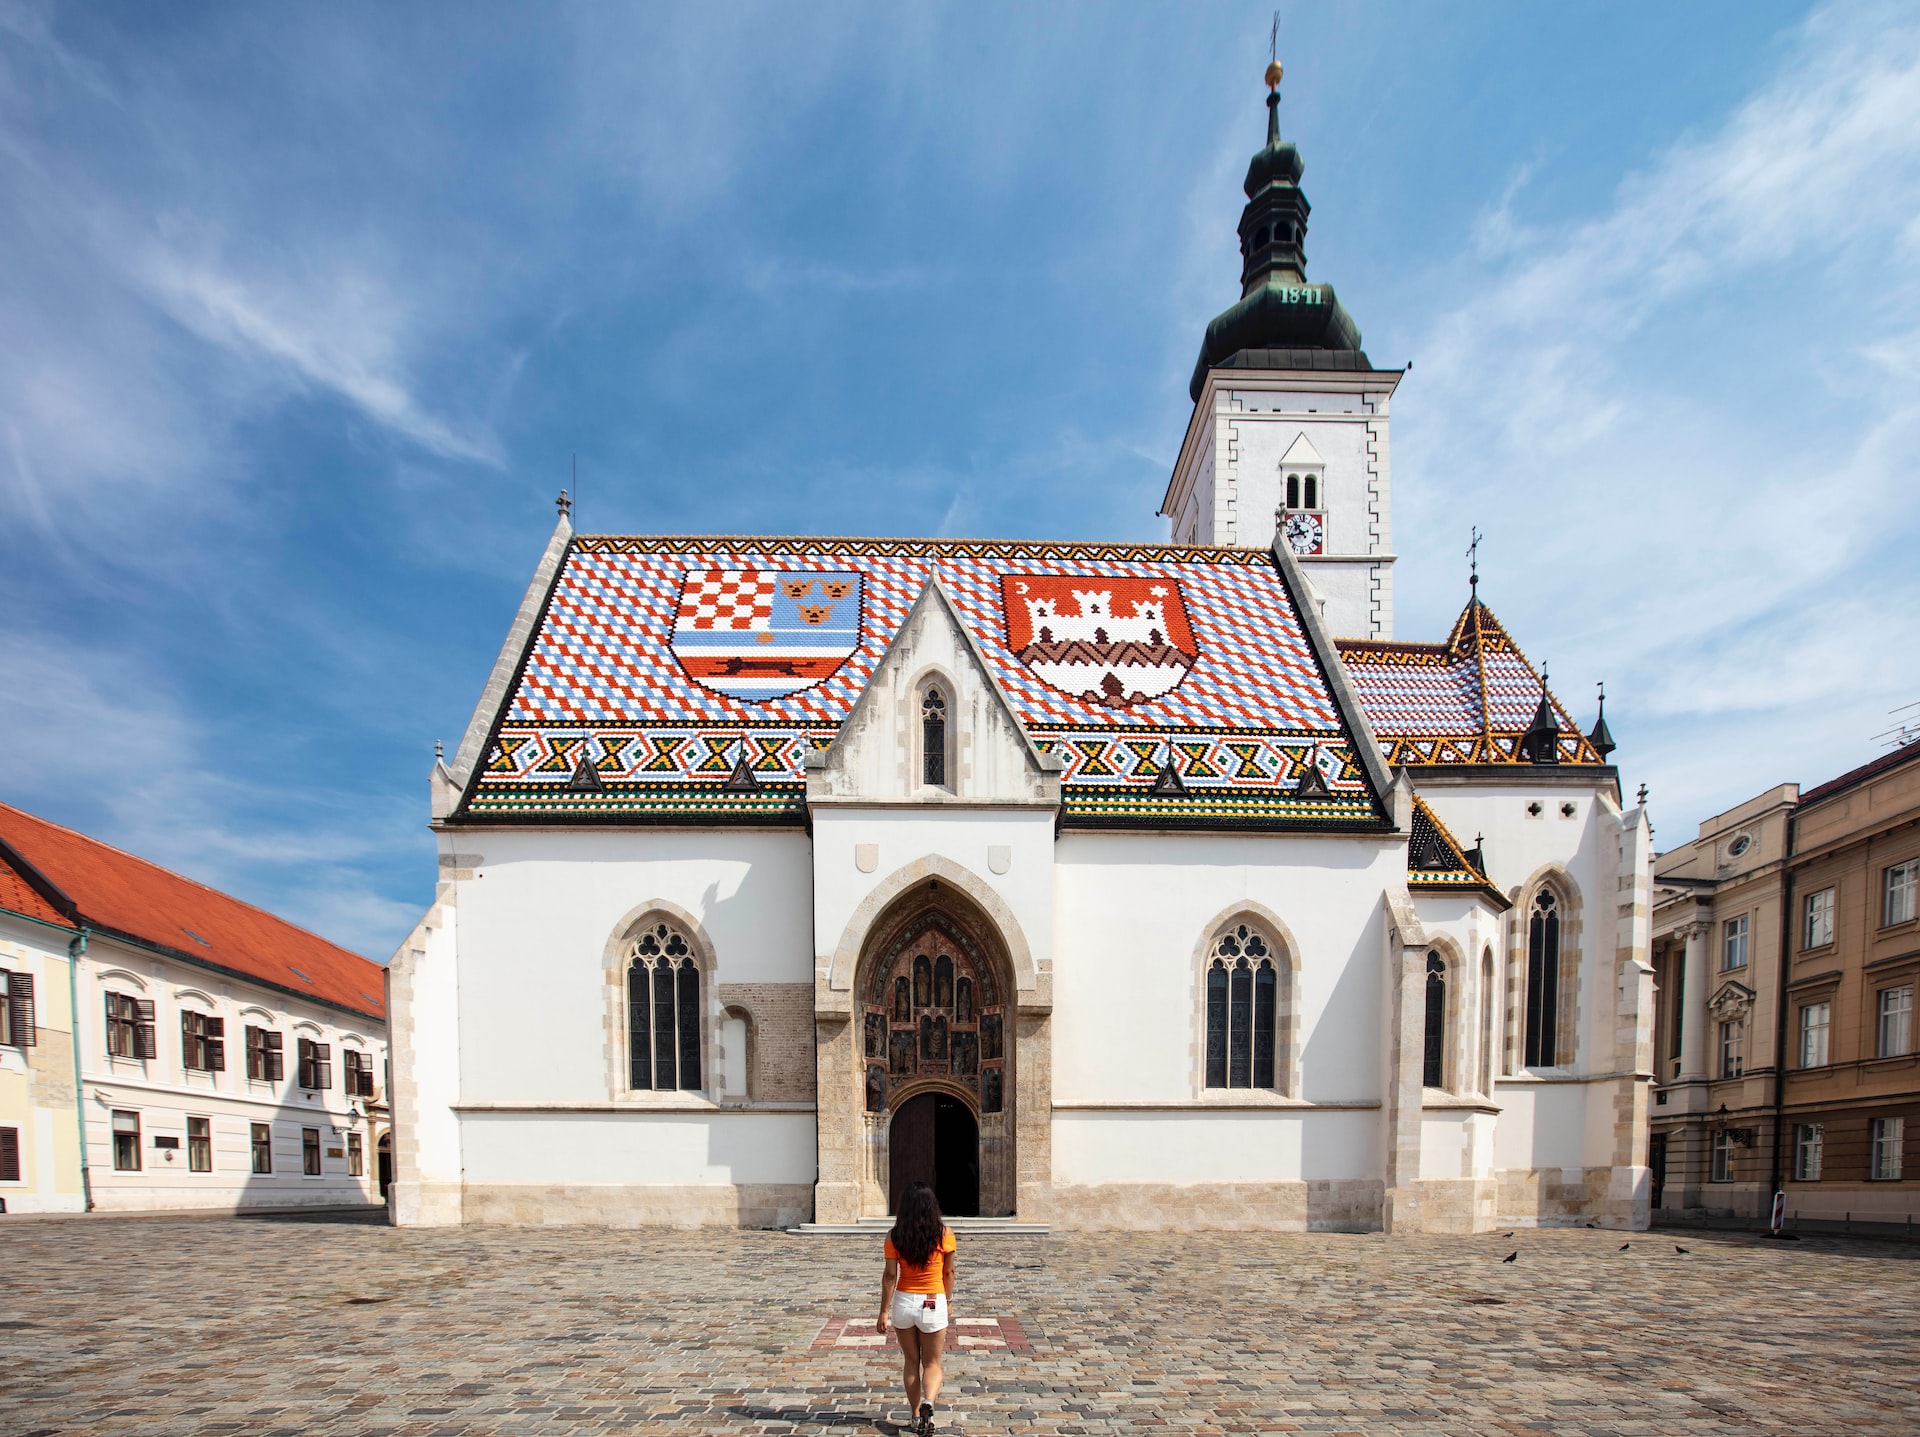 St Marks church in Zagreb